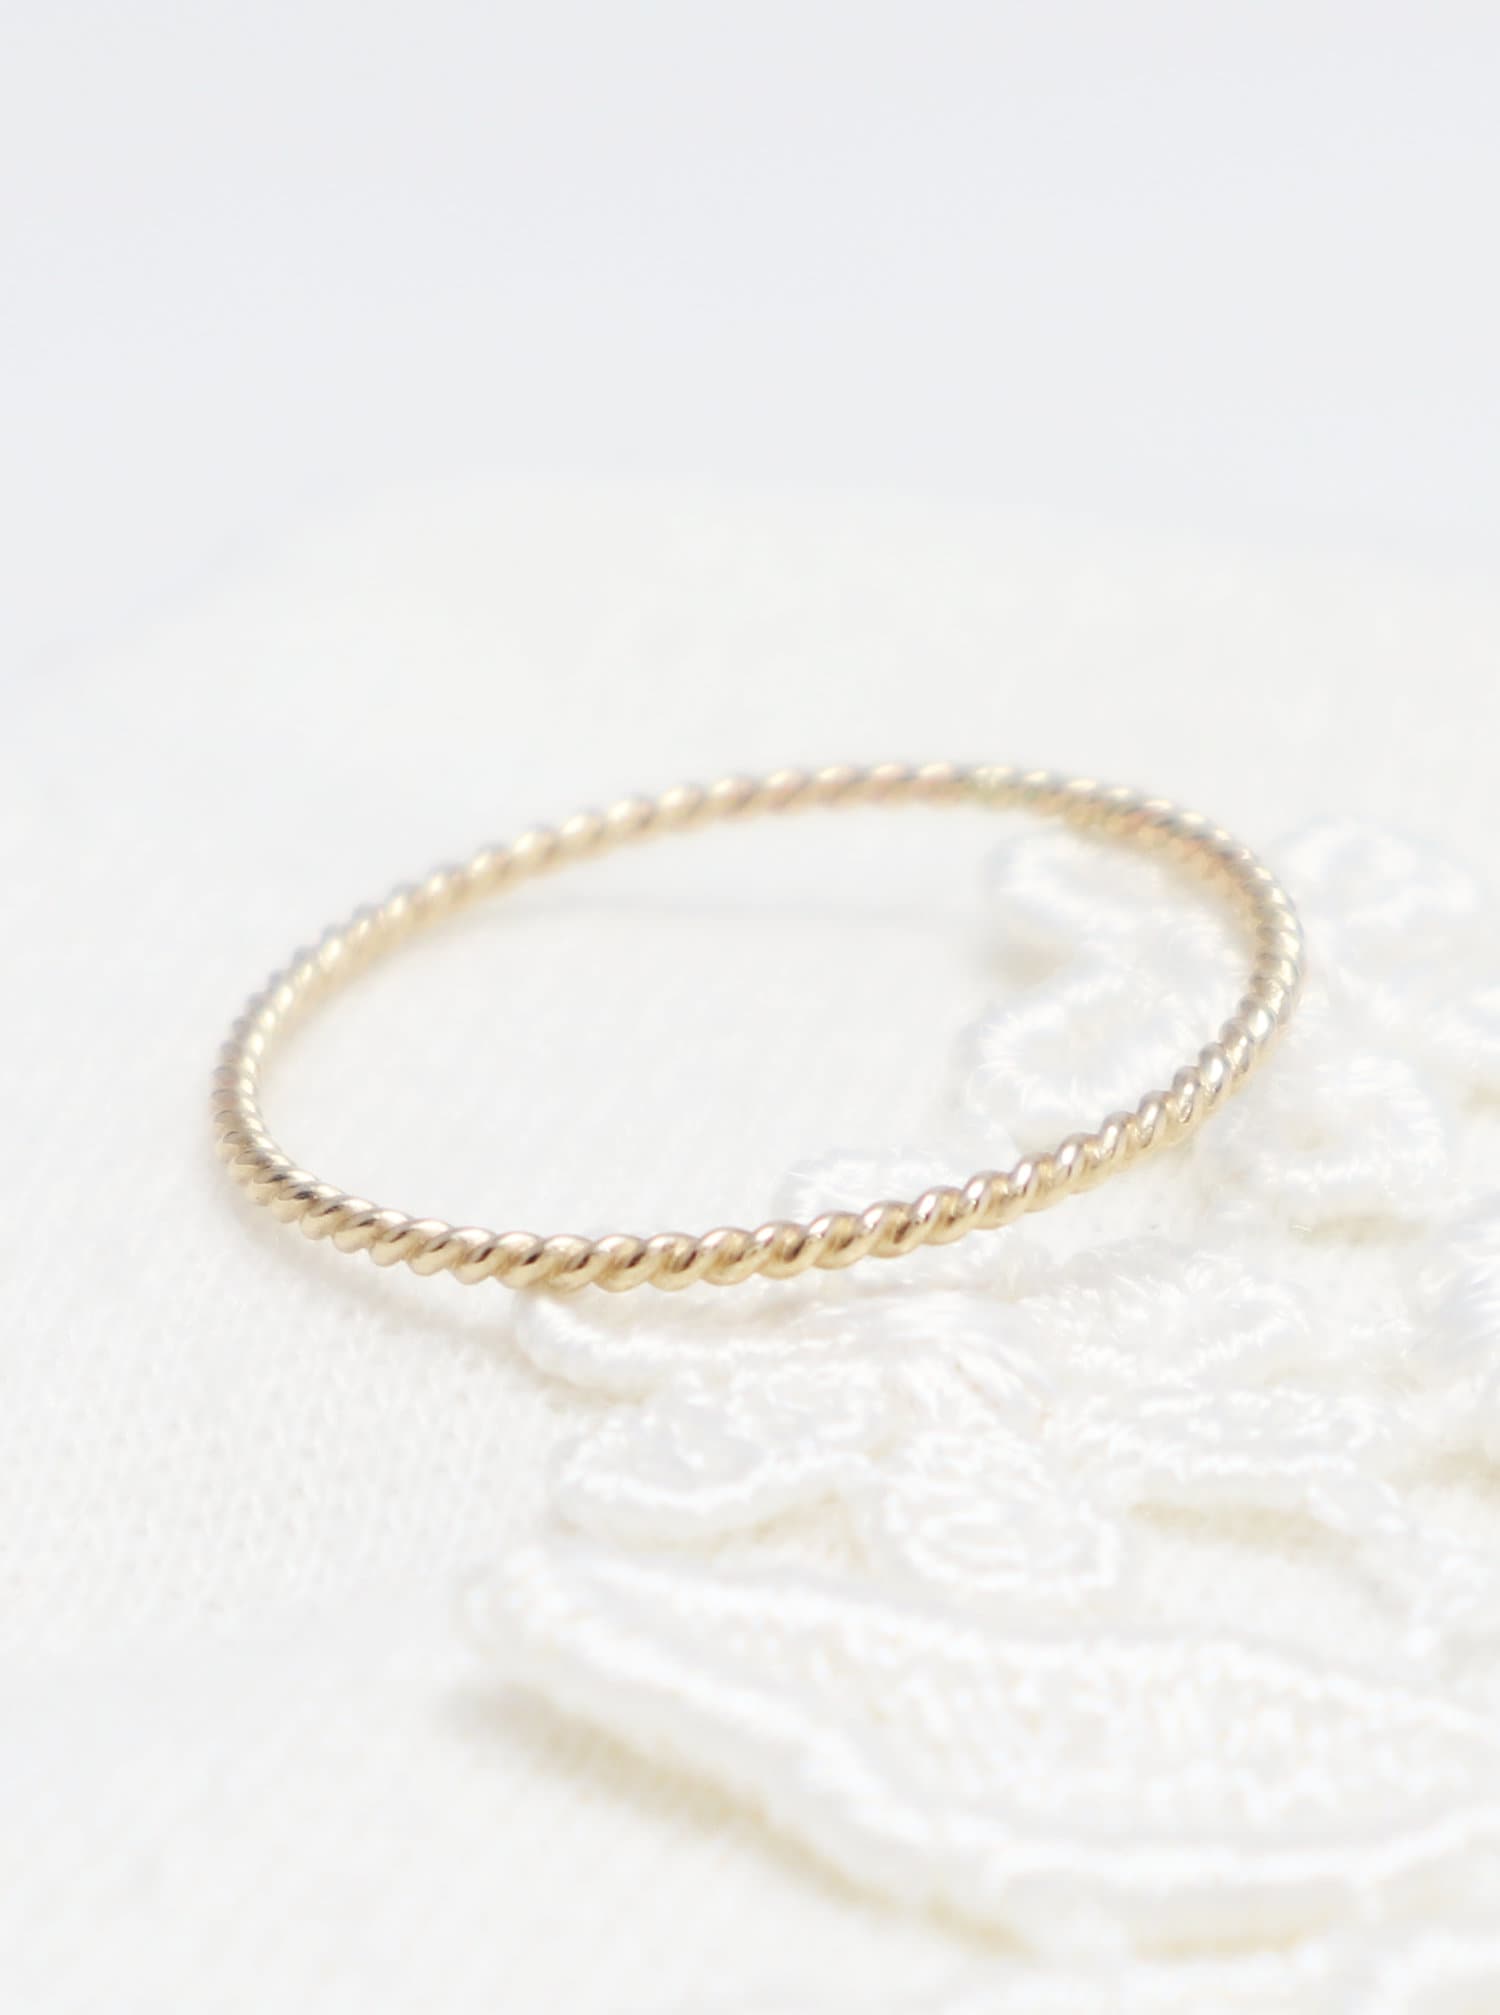 Super Dünner Gold Twist Ring, Ringe Für Frauen, Einfacher Stapelring, Zierlicher Zarter Daumenring, Midi Ring | Optimismus von IrresistiblyMinimal